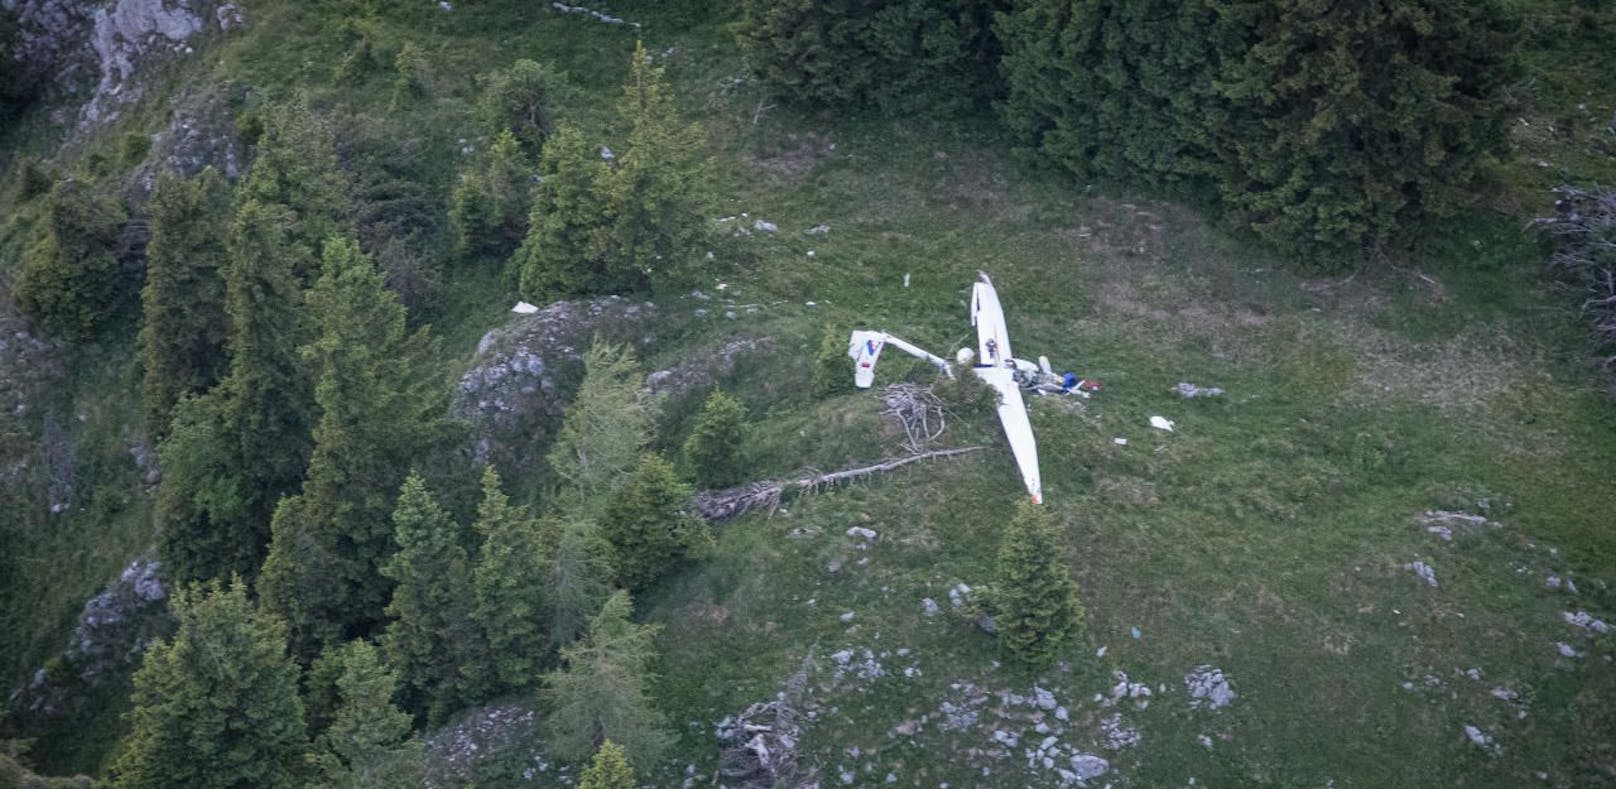 Segelflugzeug stürzte ab: Mann sofort tot